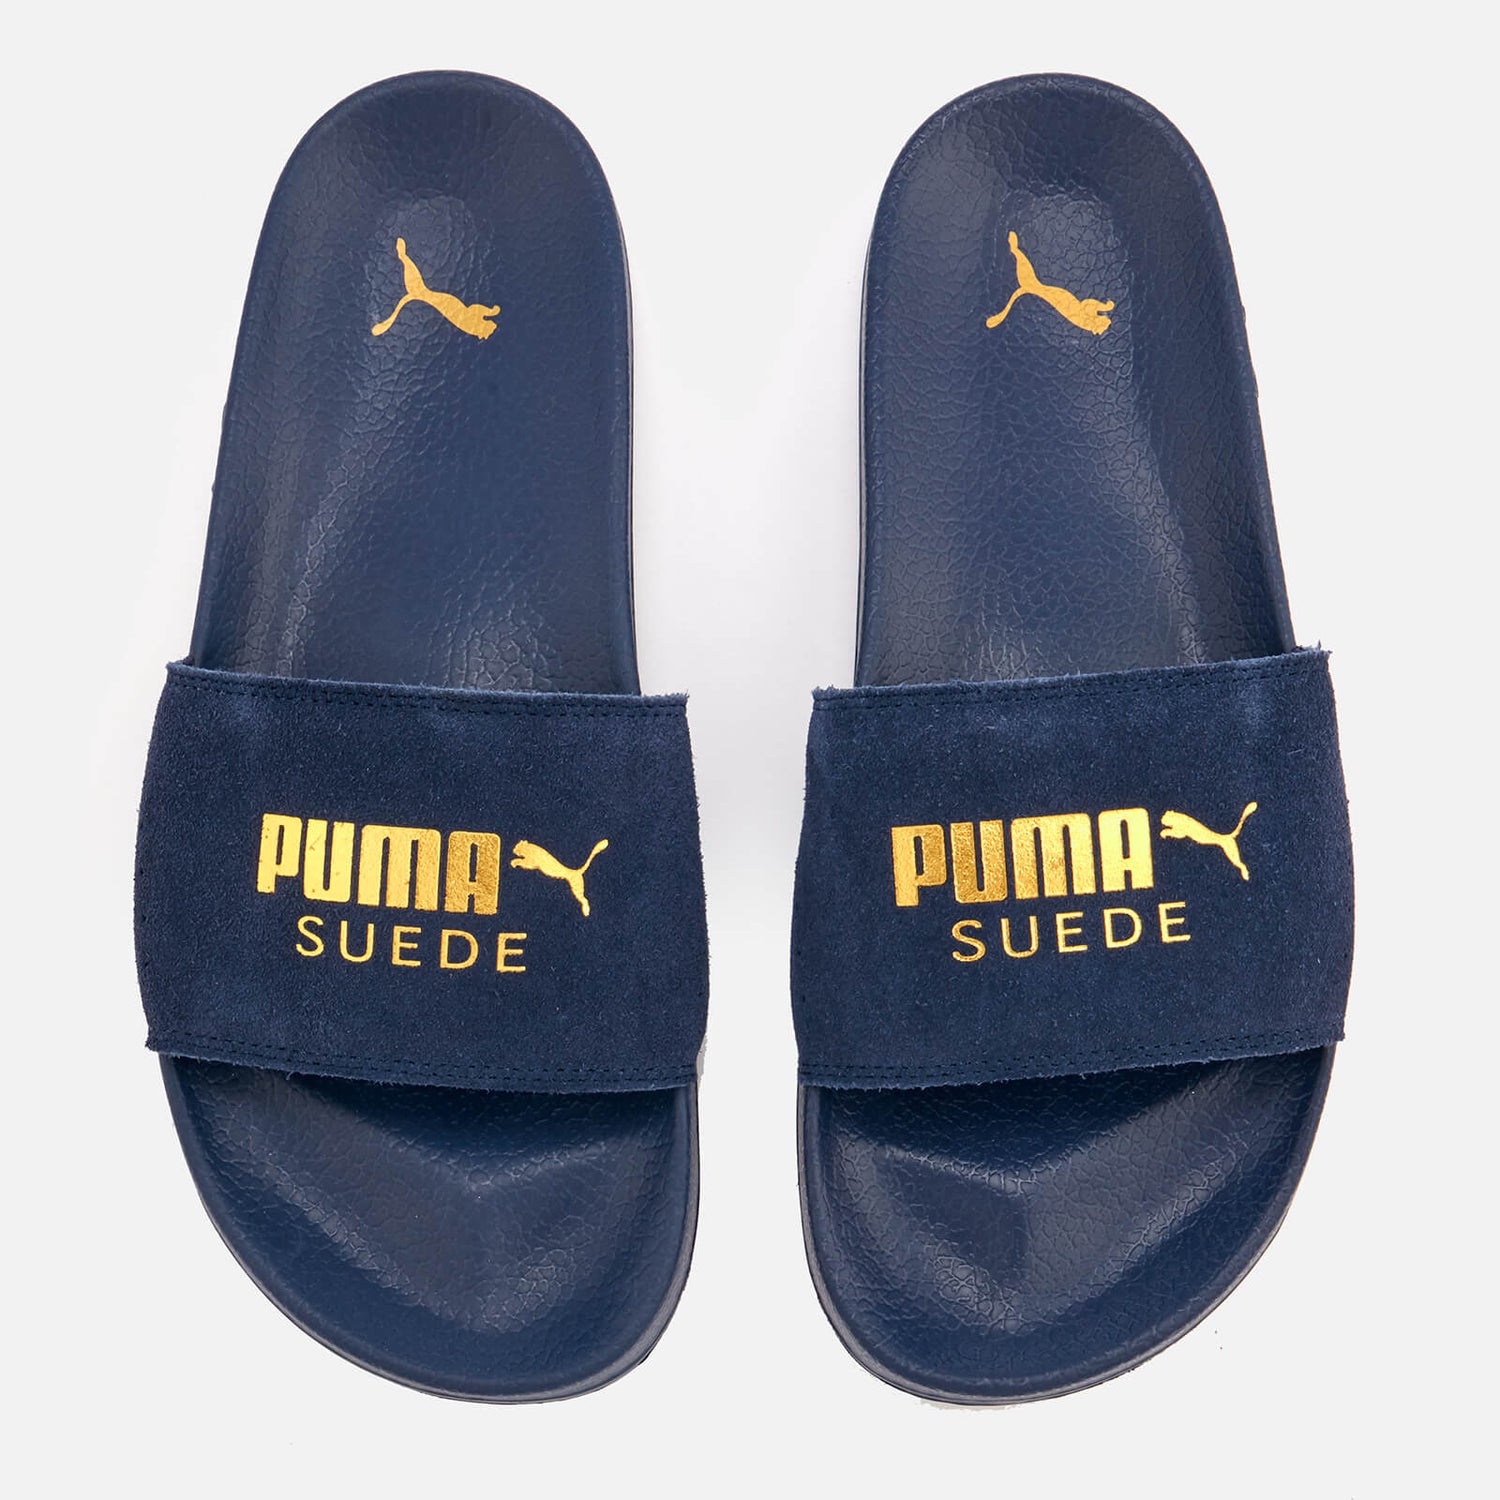 Puma Men's Leadcat Suede Slide Sandals - Peacoat/Puma Team Gold | TheHut.com